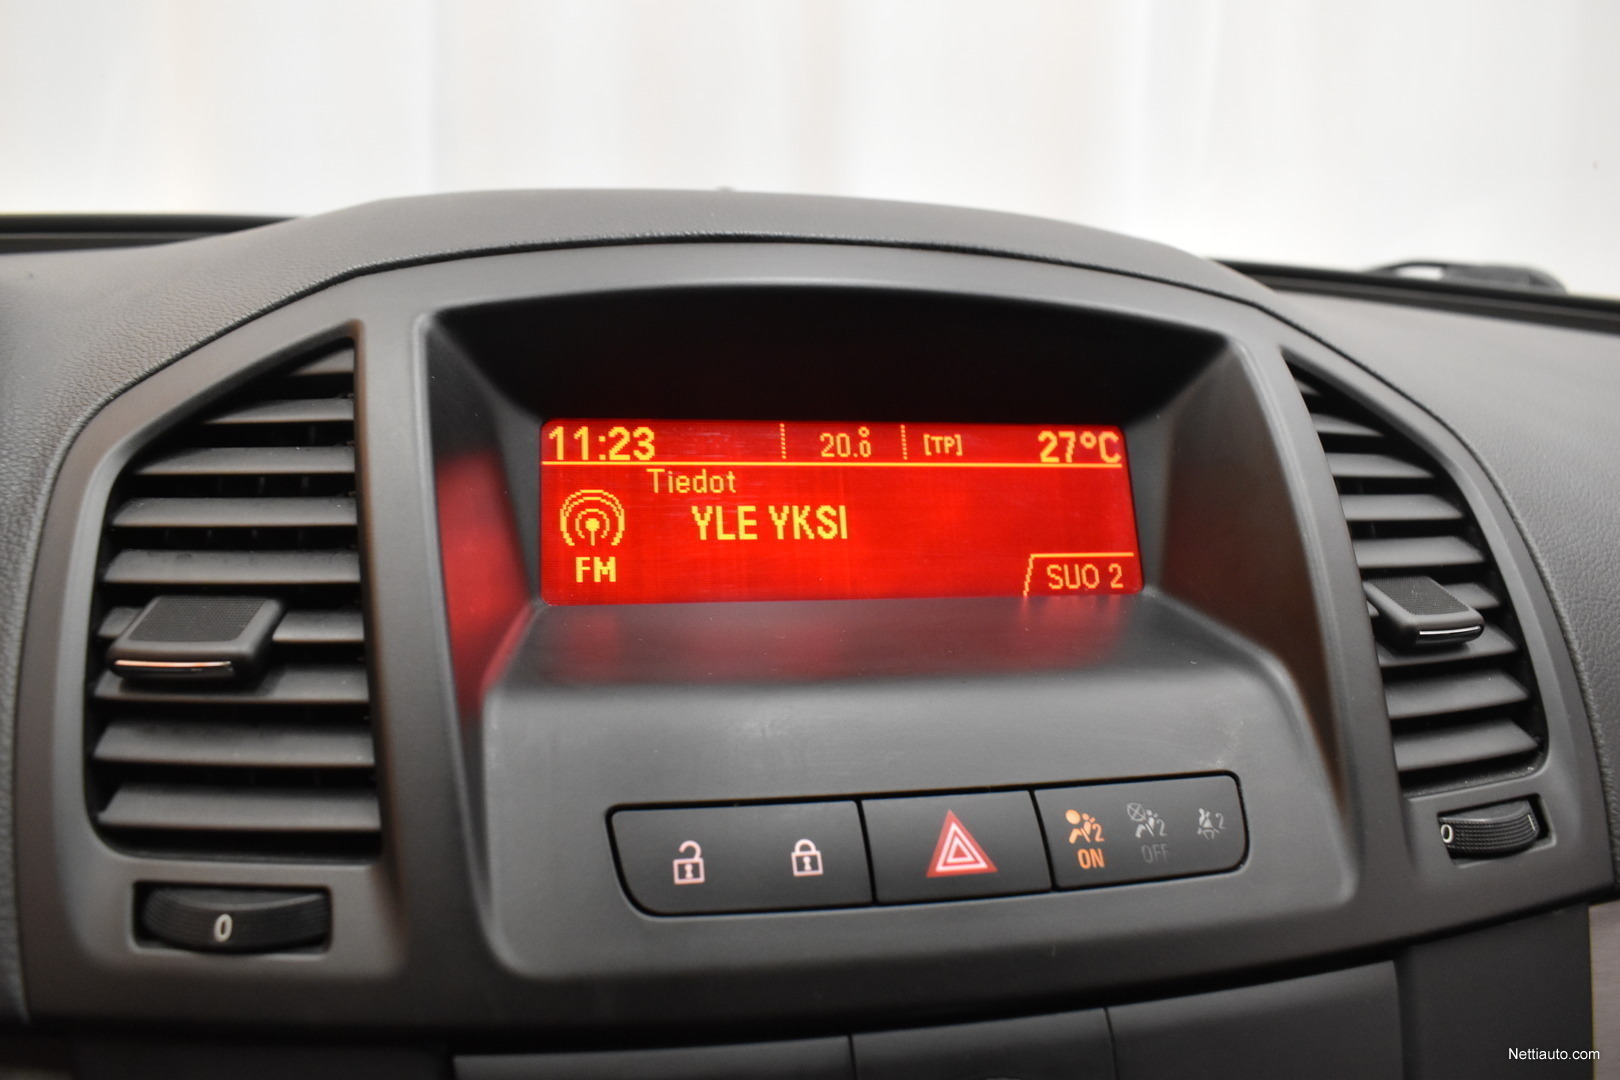 Opel Insignia 2.0 CDTI (G09) A ** SIISTI / Cruise Control / Aut.  Ilmastointi / USB & AUX ** Sedan 2011 - Used vehicle - Nettiauto